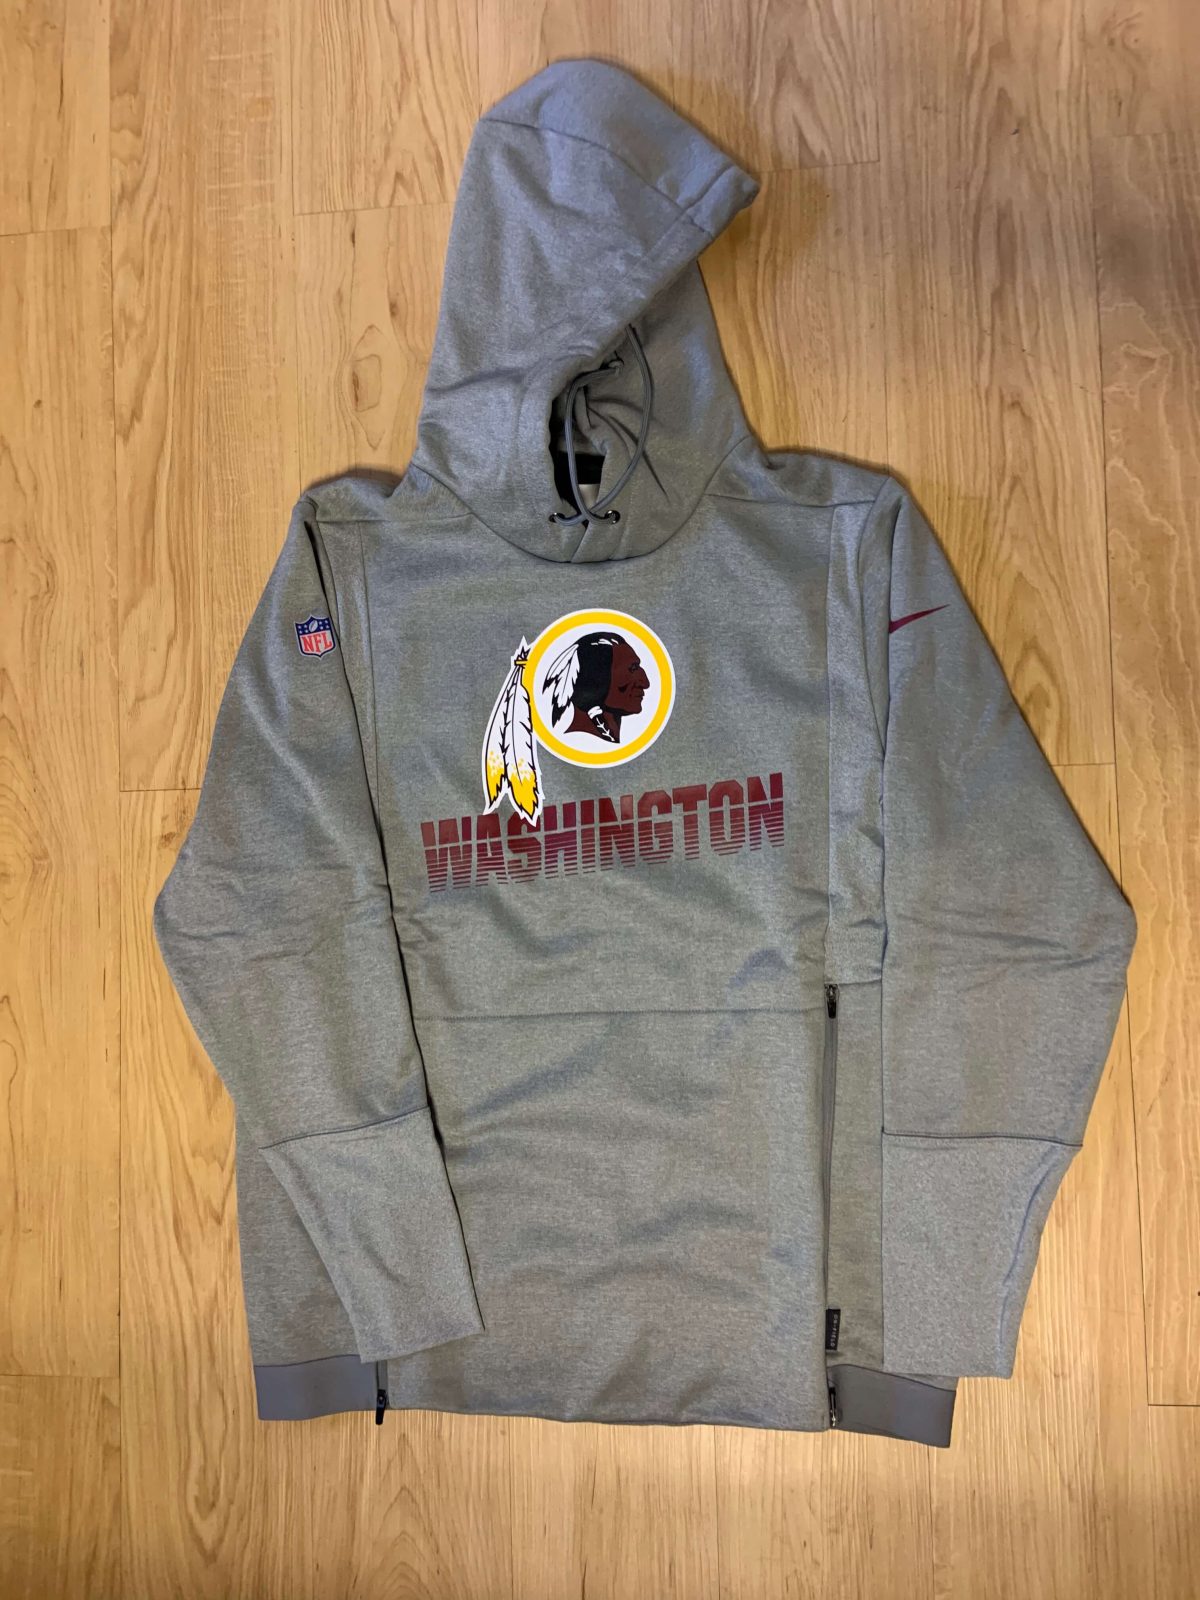 Washington Redskins Nike Hoodie : NARP Clothing